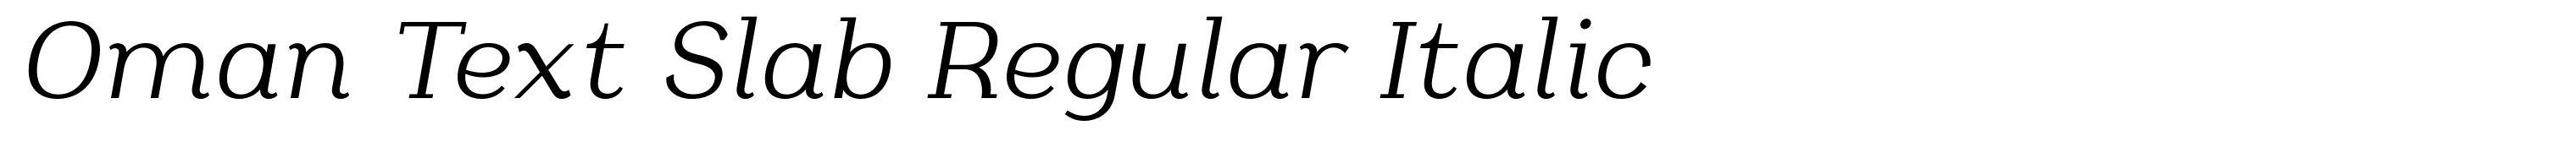 Oman Text Slab Regular Italic